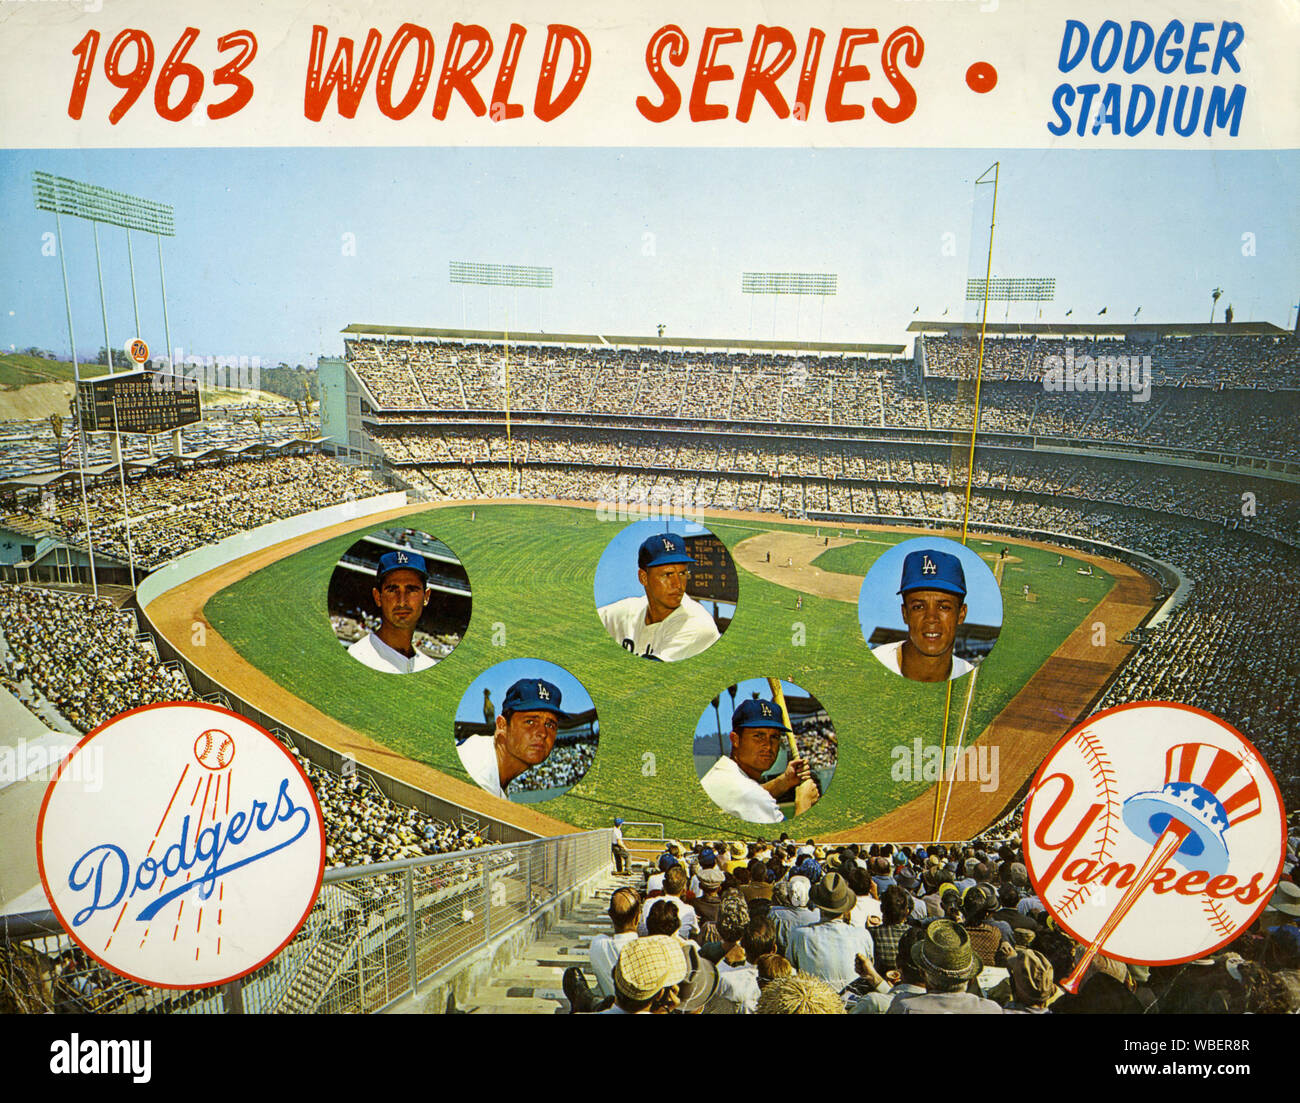 Impresión de recuerdos de la Serie Mundial de 1963 que muestra el Estadio de los Dodger y jugadores estrella de los Dodgers de Los Angeles, que derrotó al New York en cuatro juegos para convertirse en campeones del mundo. Foto de stock